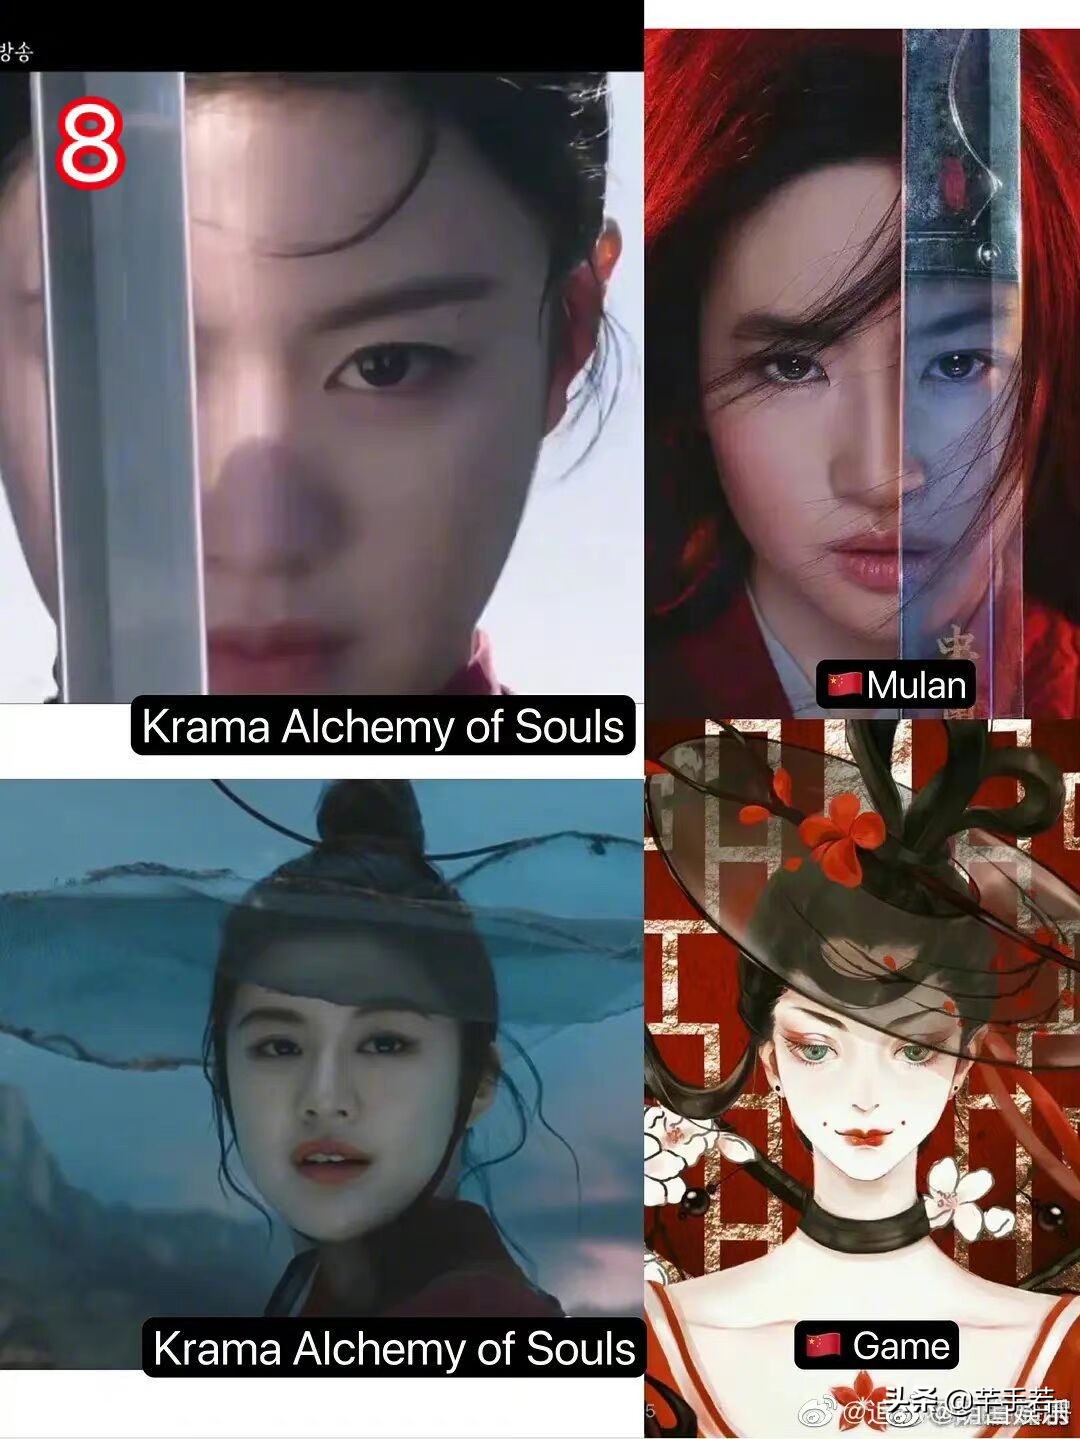 韩国首部仙侠剧被指抄袭国产剧，从设定到服装，再到场景全部照抄